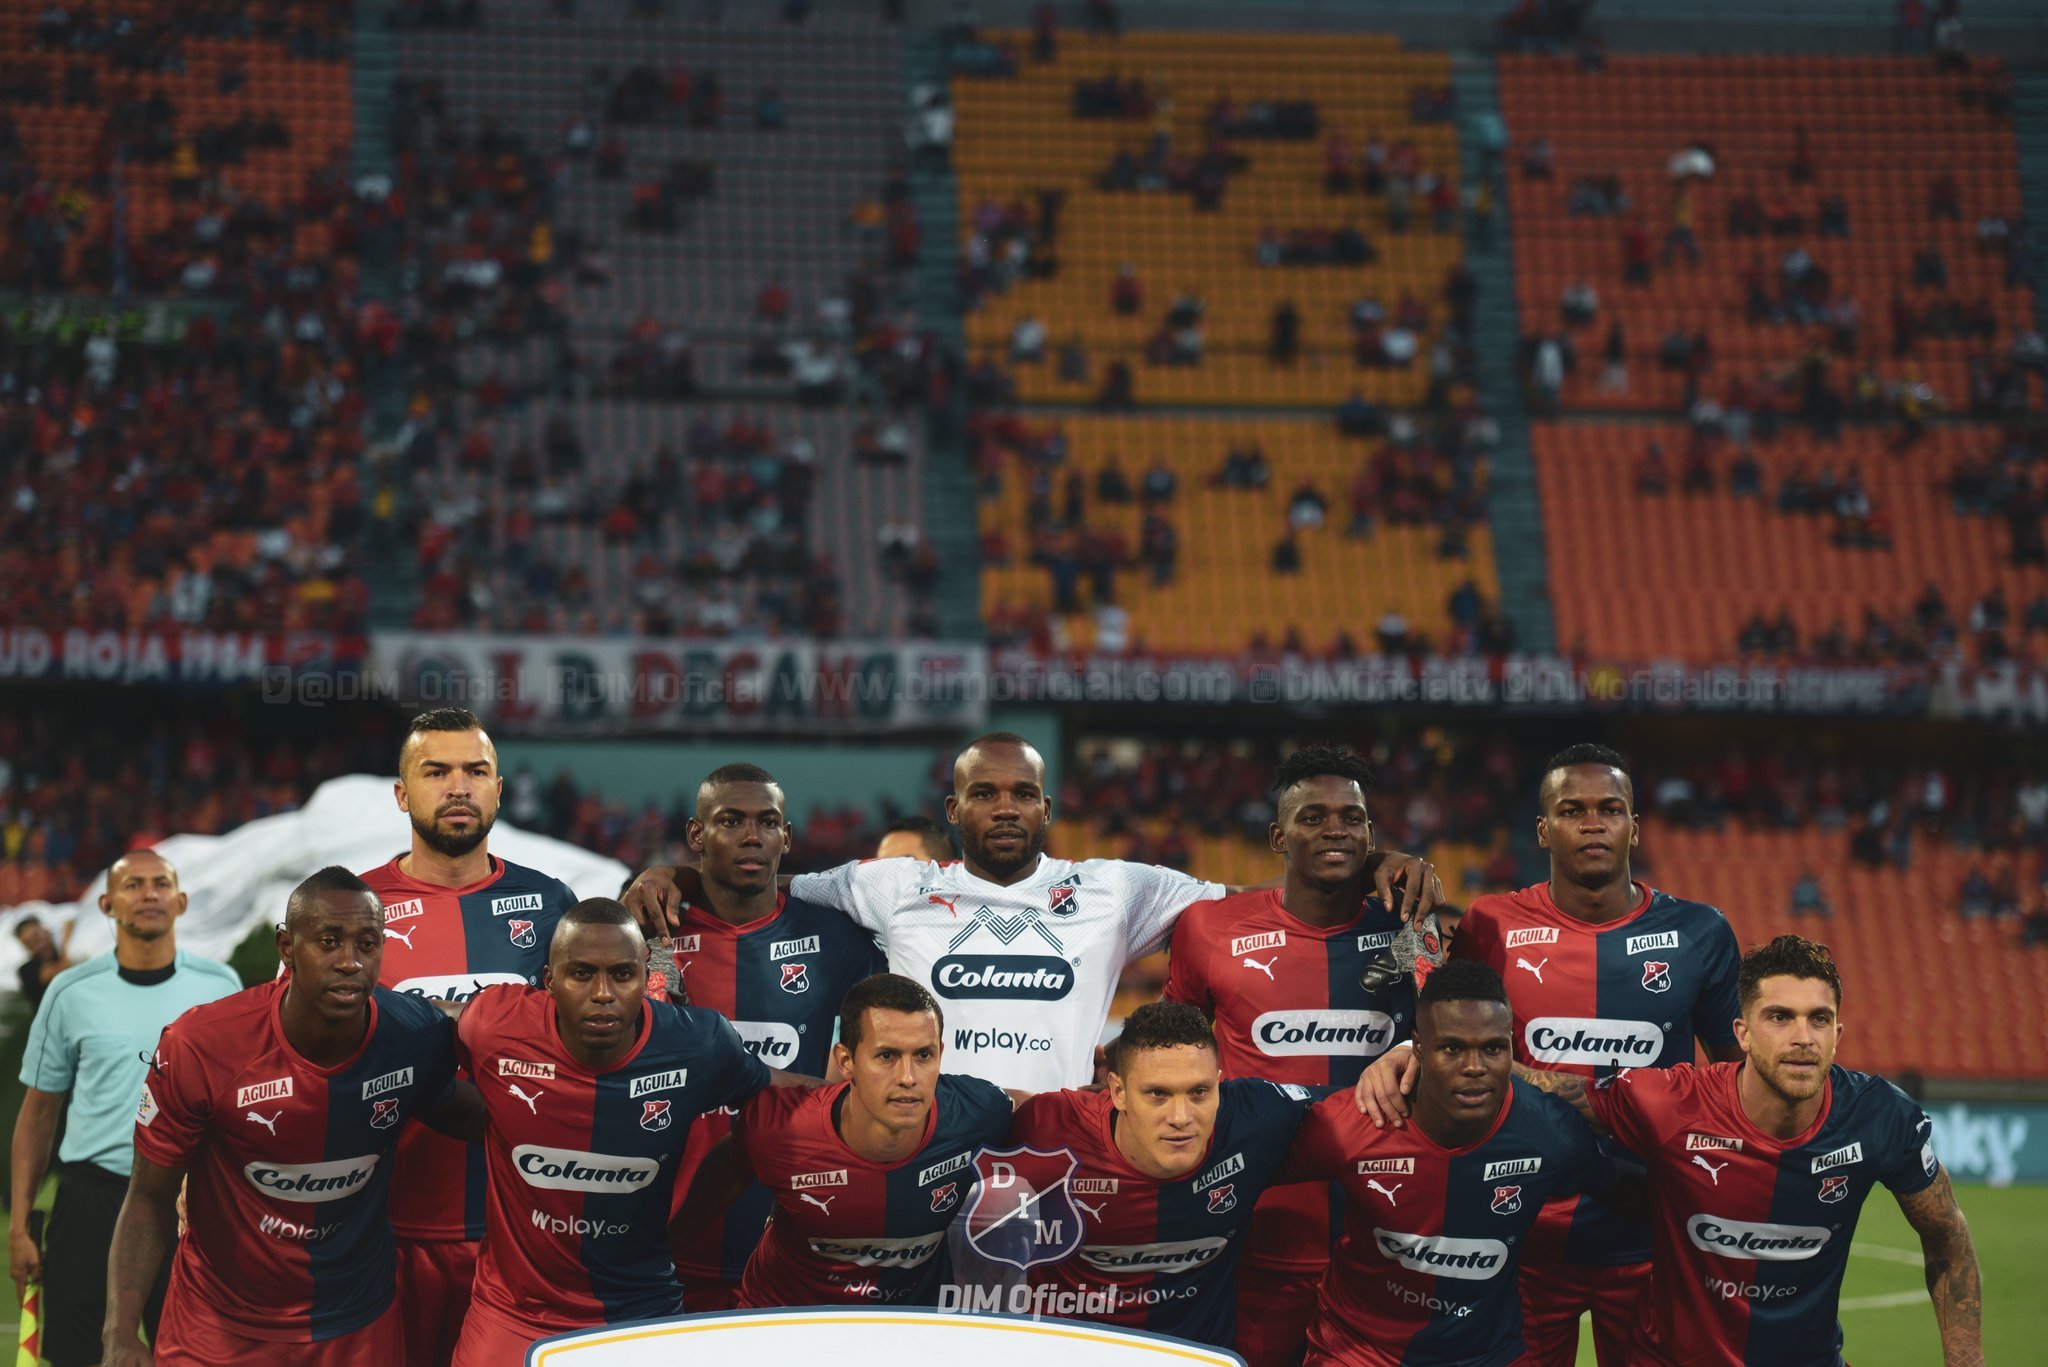 Independiente Medellín (Colômbia) – Por fim, outro time colombiano que jogará apenas uma vez antes do retorno da Libertadores está no grupo do Boca Juniors. A equipe enfrentará o Caracas, no Atanasio Girardot, dia 16.